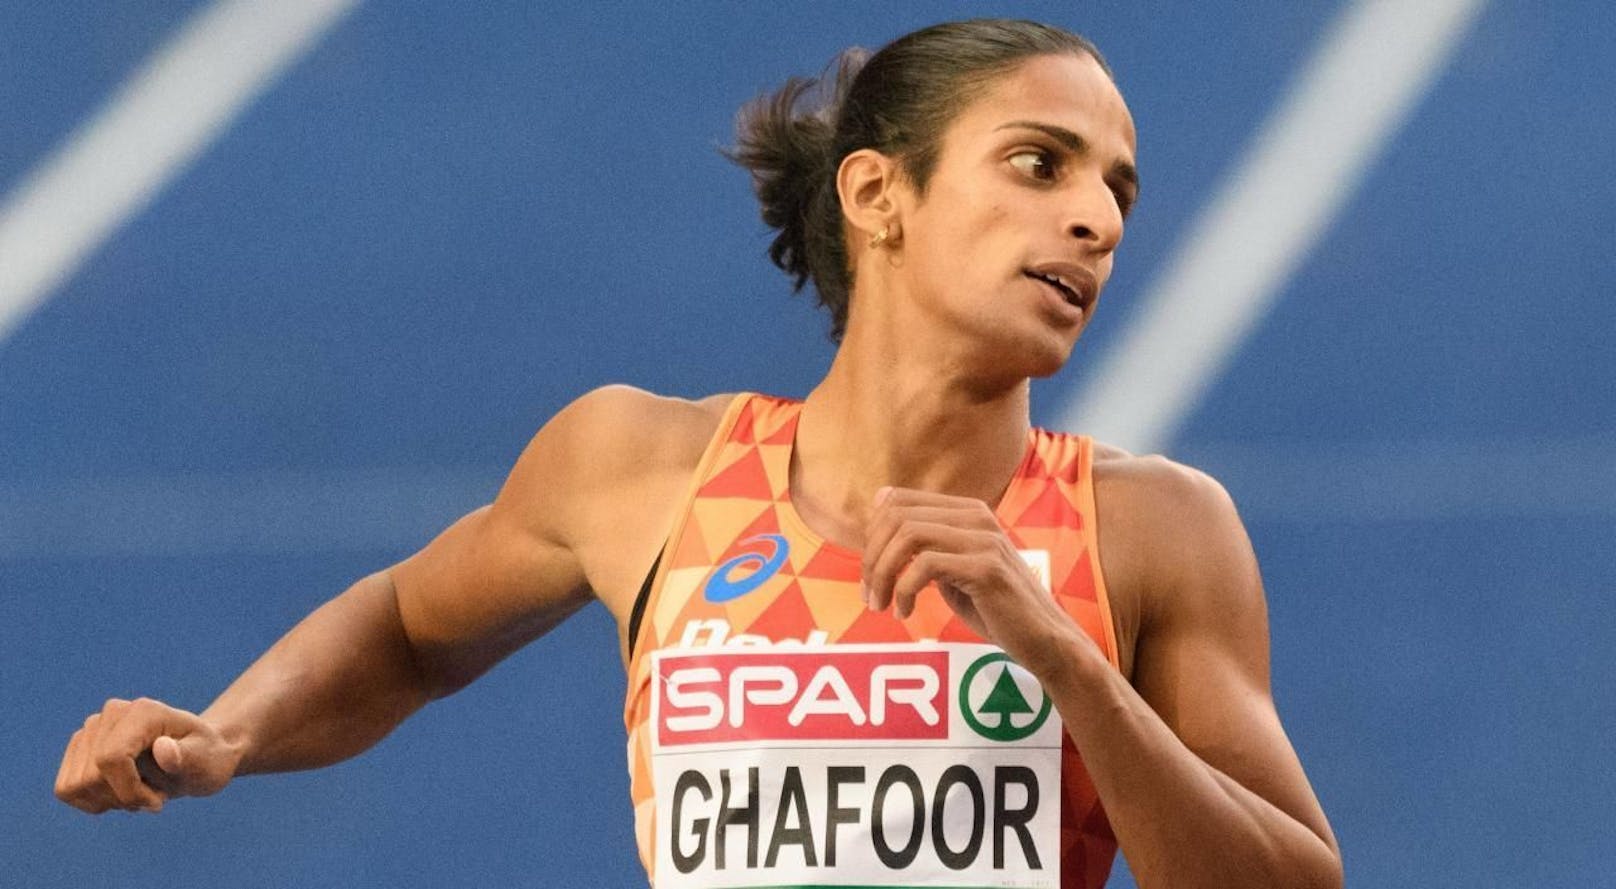 Madiea Ghafoor nahm an Olympischen Spielen teil, nun muss sie ins Gefängnis.